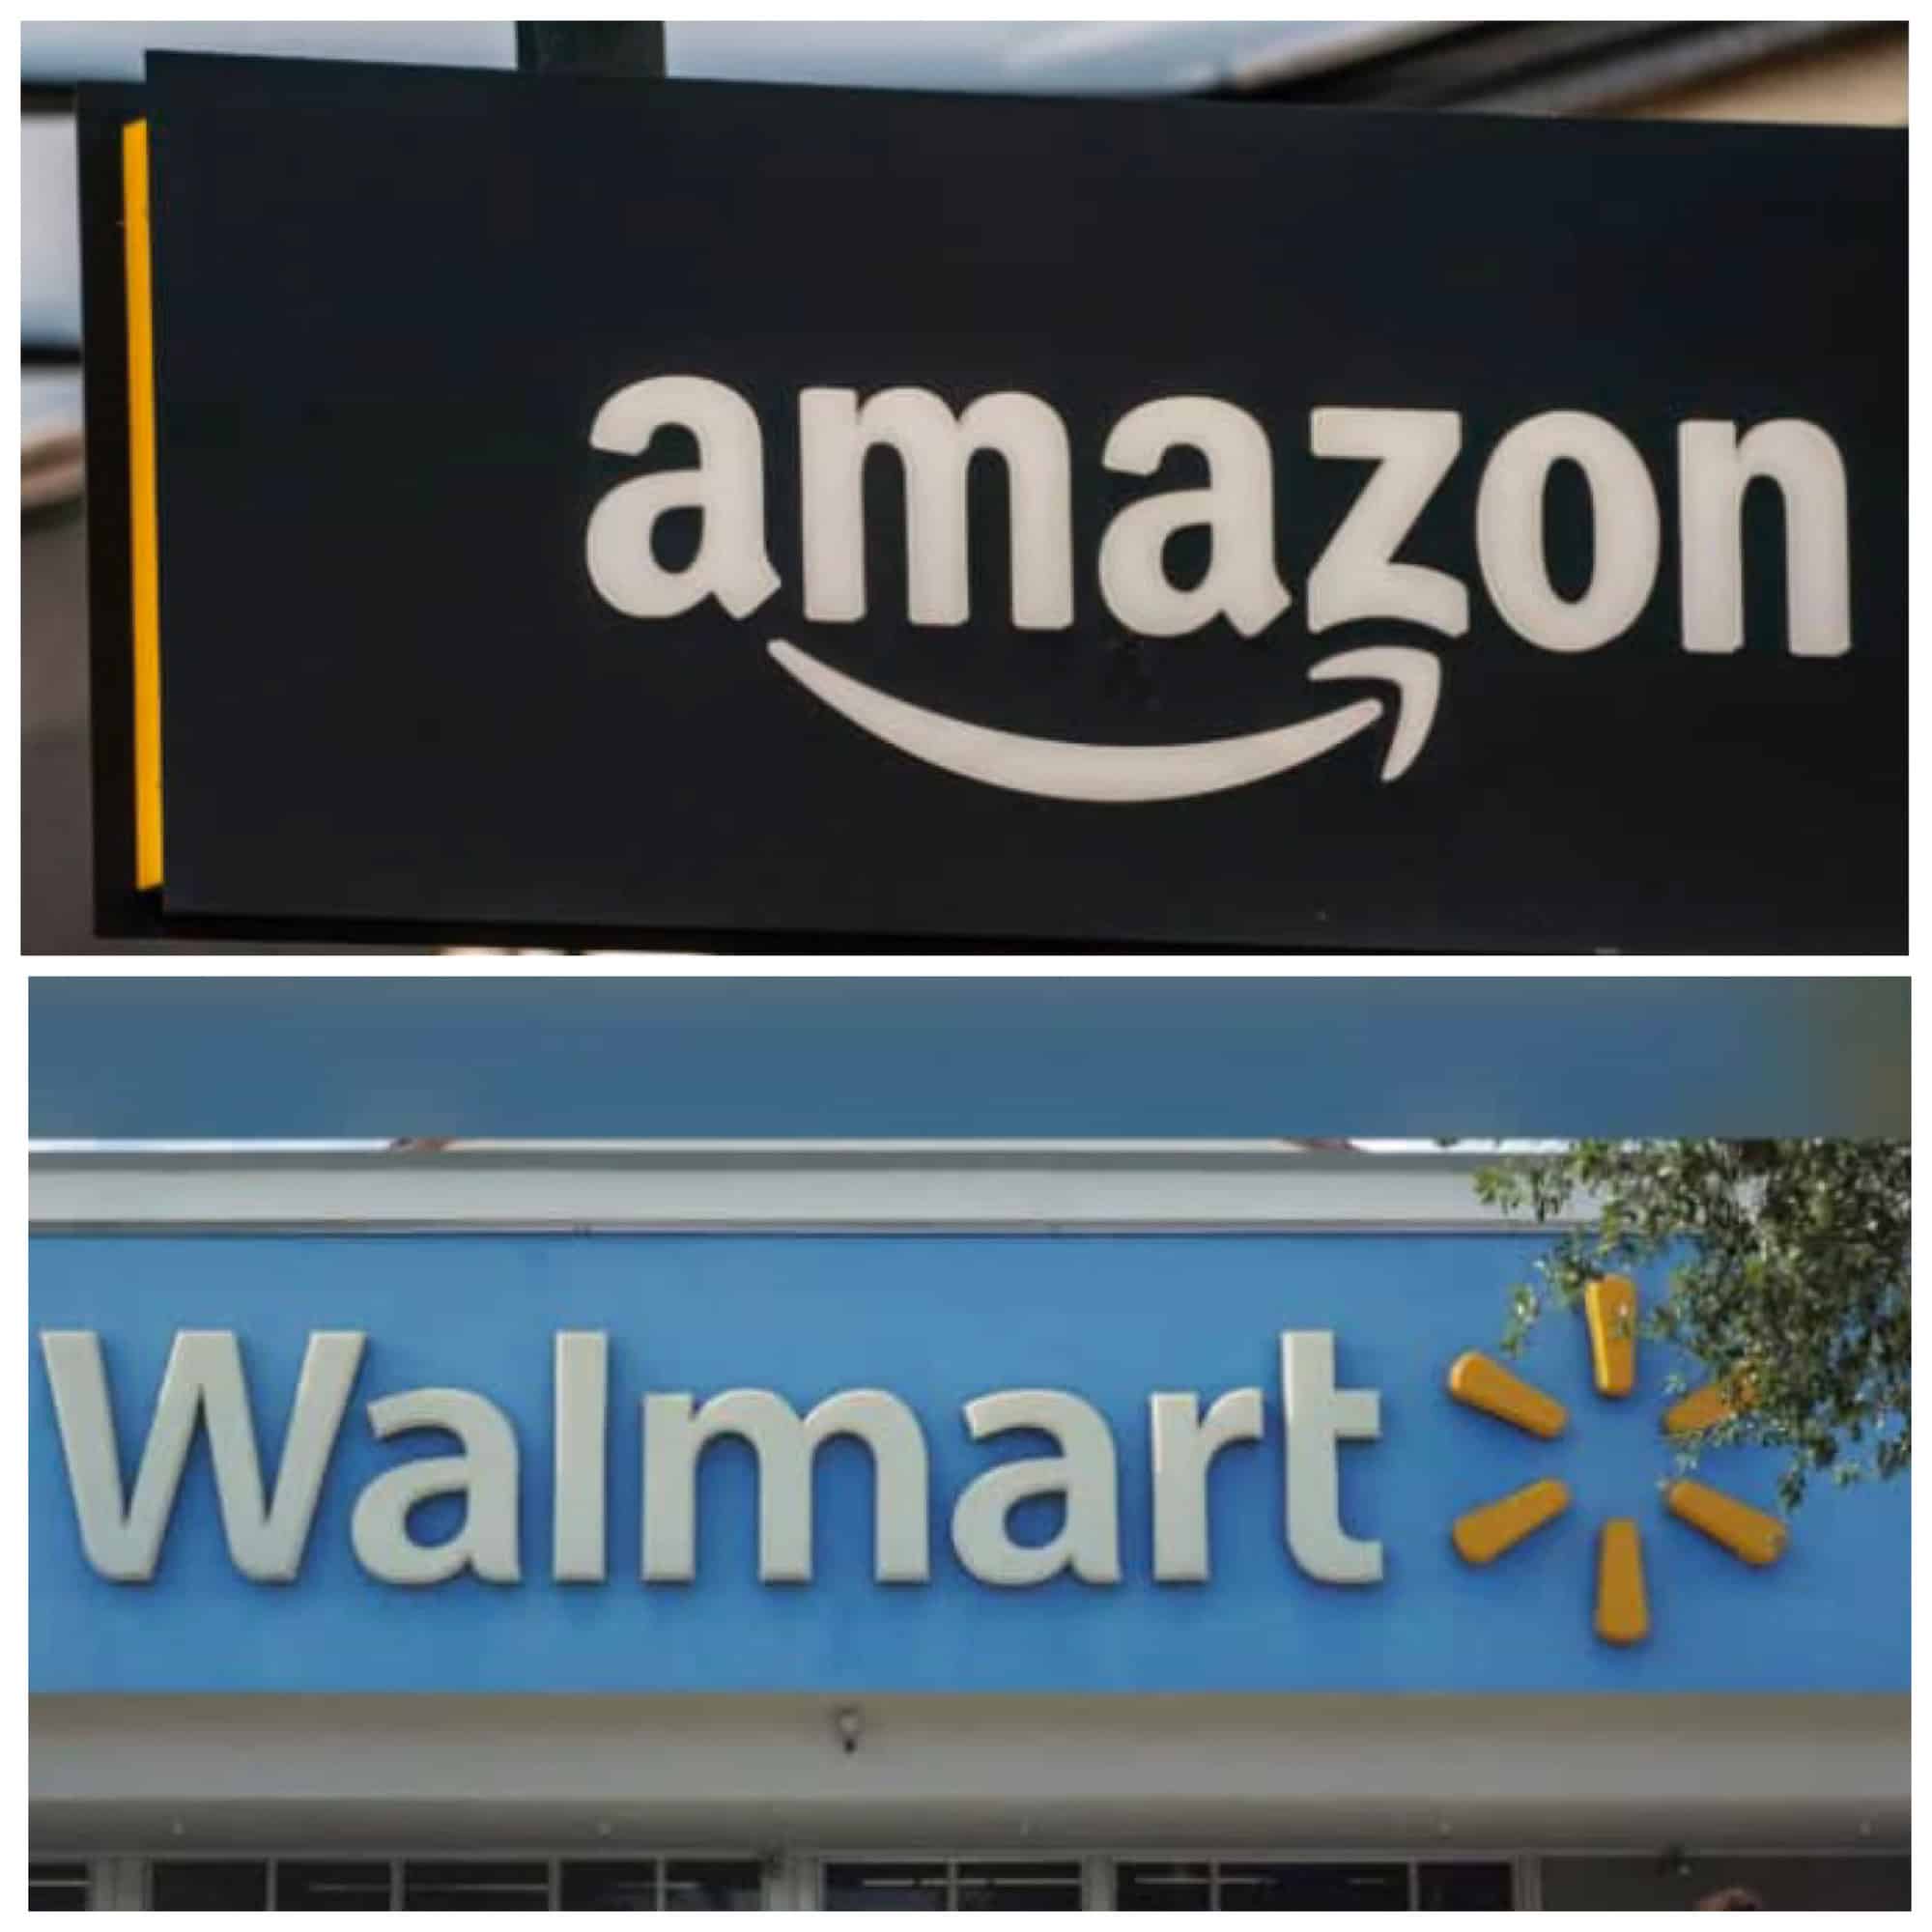 Amazon and Walmart